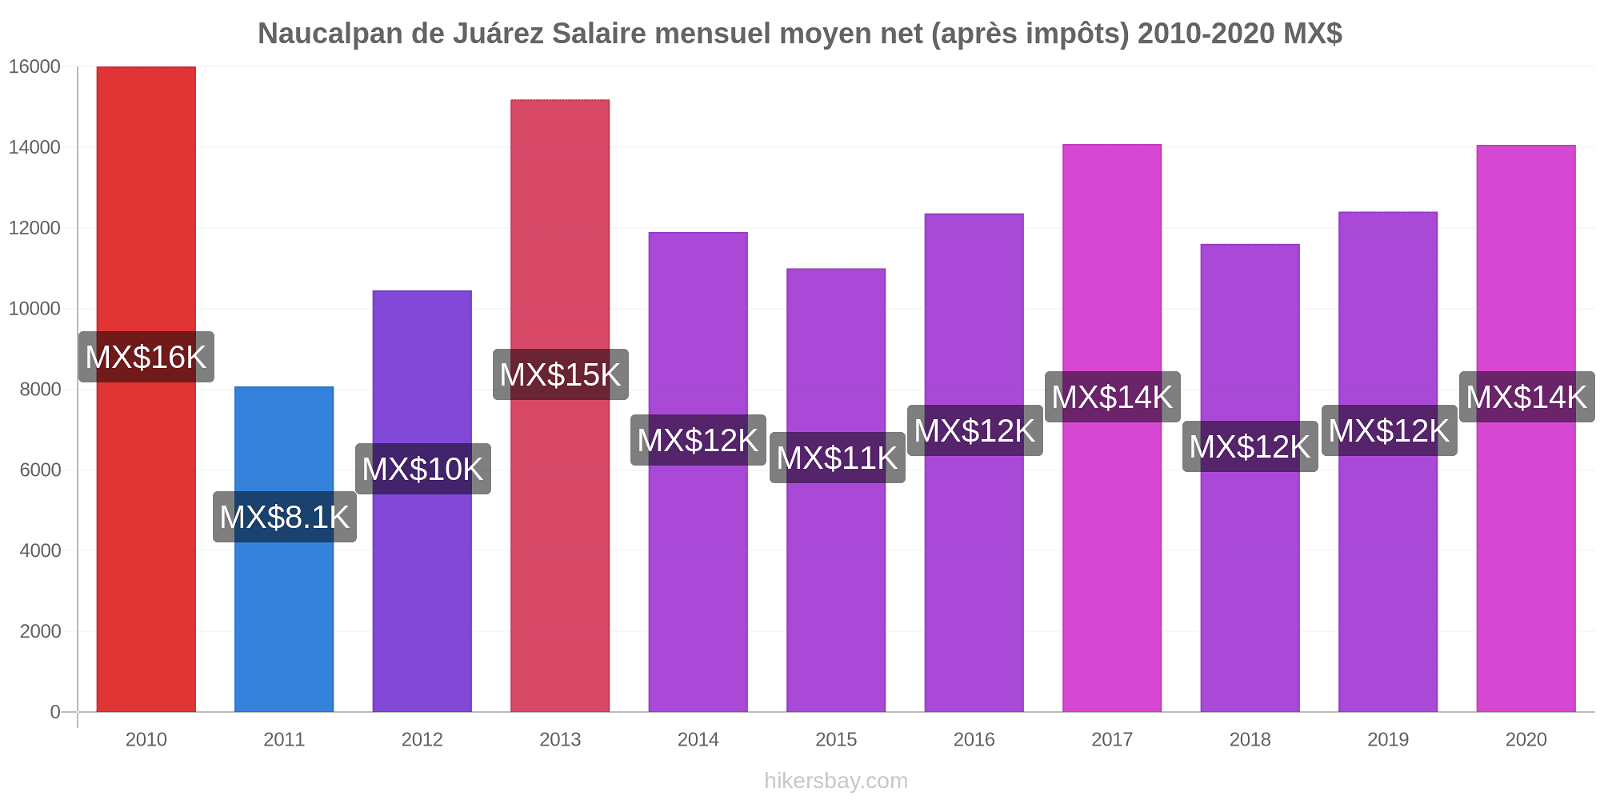 Naucalpan de Juárez changements de prix Salaire mensuel Net (après impôts) hikersbay.com